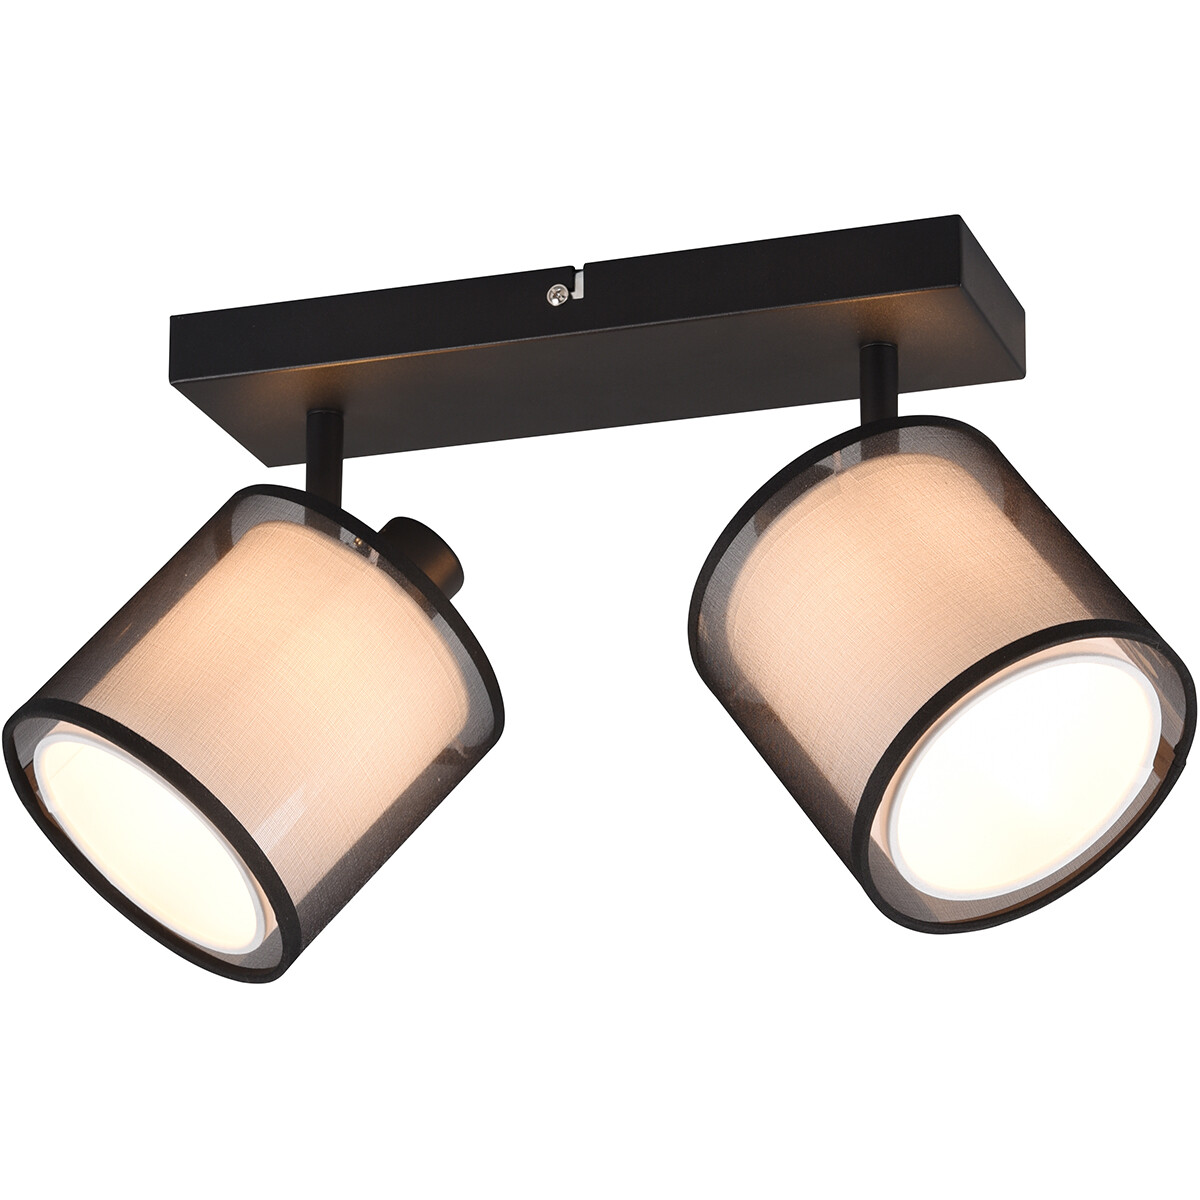 LED Plafondspot - Plafondverlichting - Trion Bidon - E14 Fitting - 2-lichts - Rechthoek - Mat Zwart - Aluminium kopen?